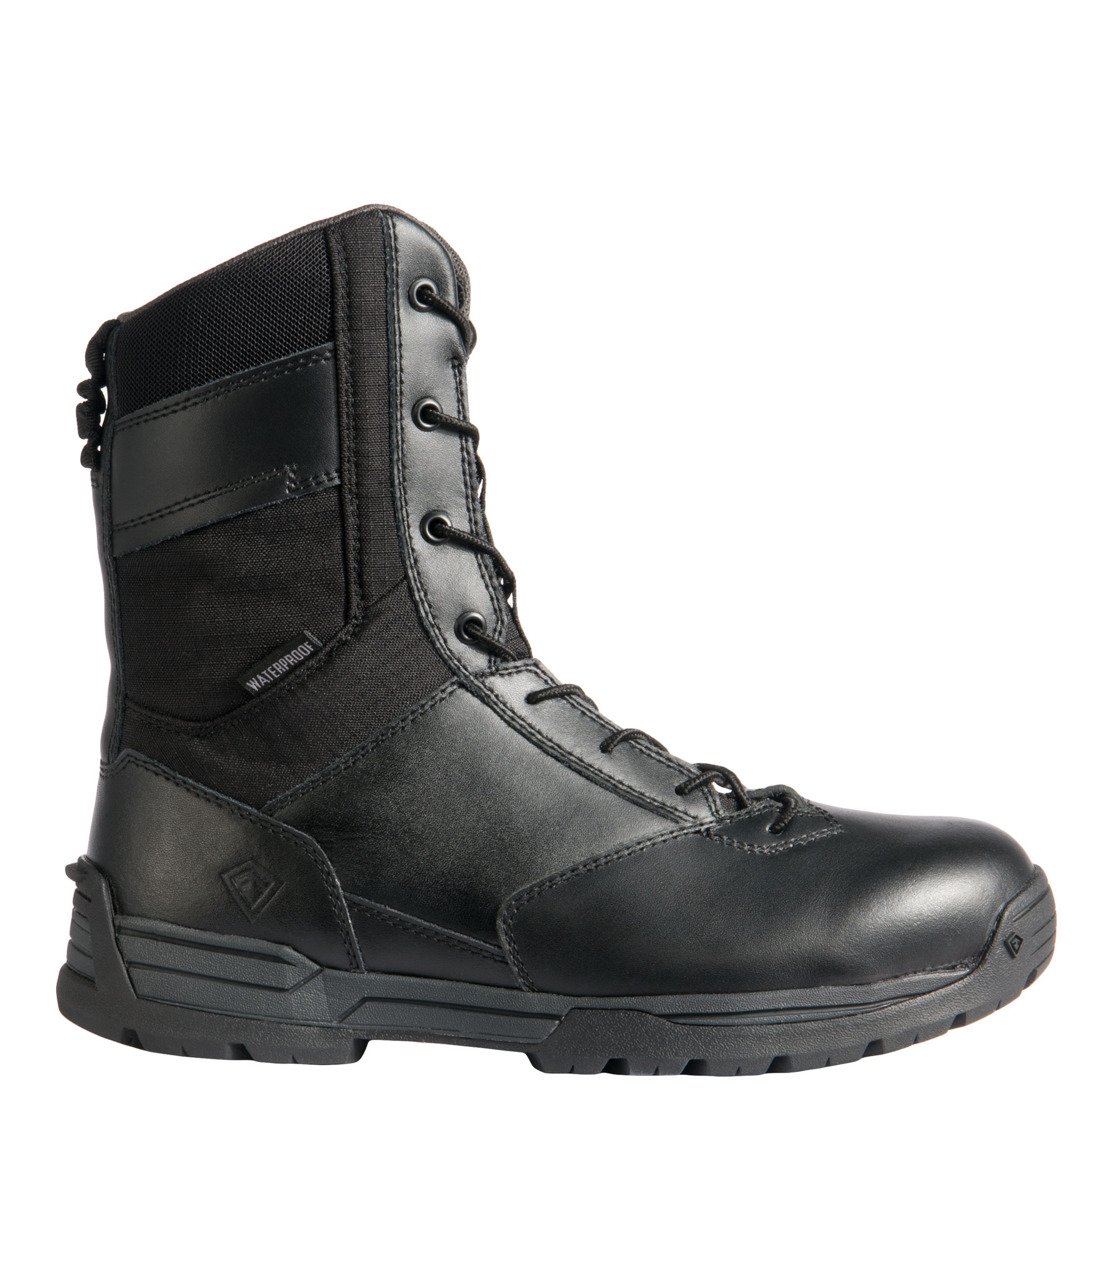 MEN’S 8” WATERPROOF SIDE ZIP DUTY BOOT | Footwear \ Boots \ Black ...